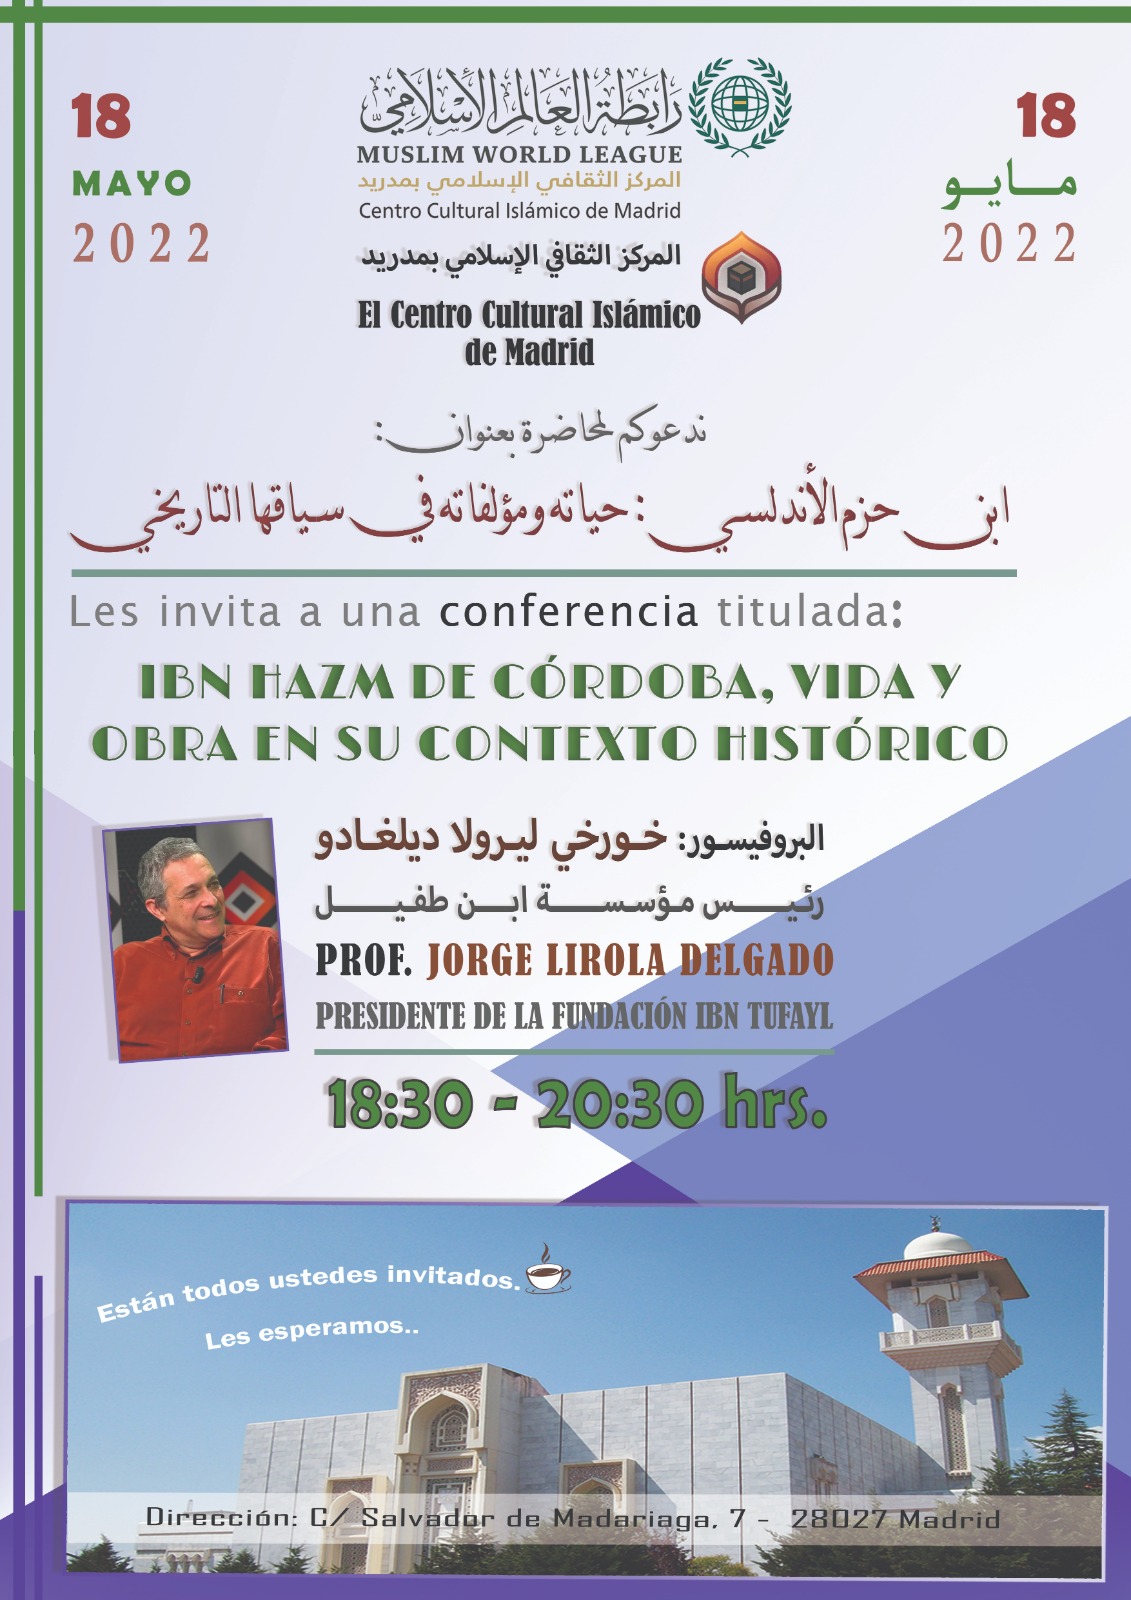 En este momento estás viendo El Centro Cultural Islámico de Madrid os recuerda la conferencia de mañana 18/05/2022 a las 18:30, titulada: IBN HAZM DE CÓRDOBA, VIDA Y OBRA EN SU CONTEXTO HISTÓRICO.